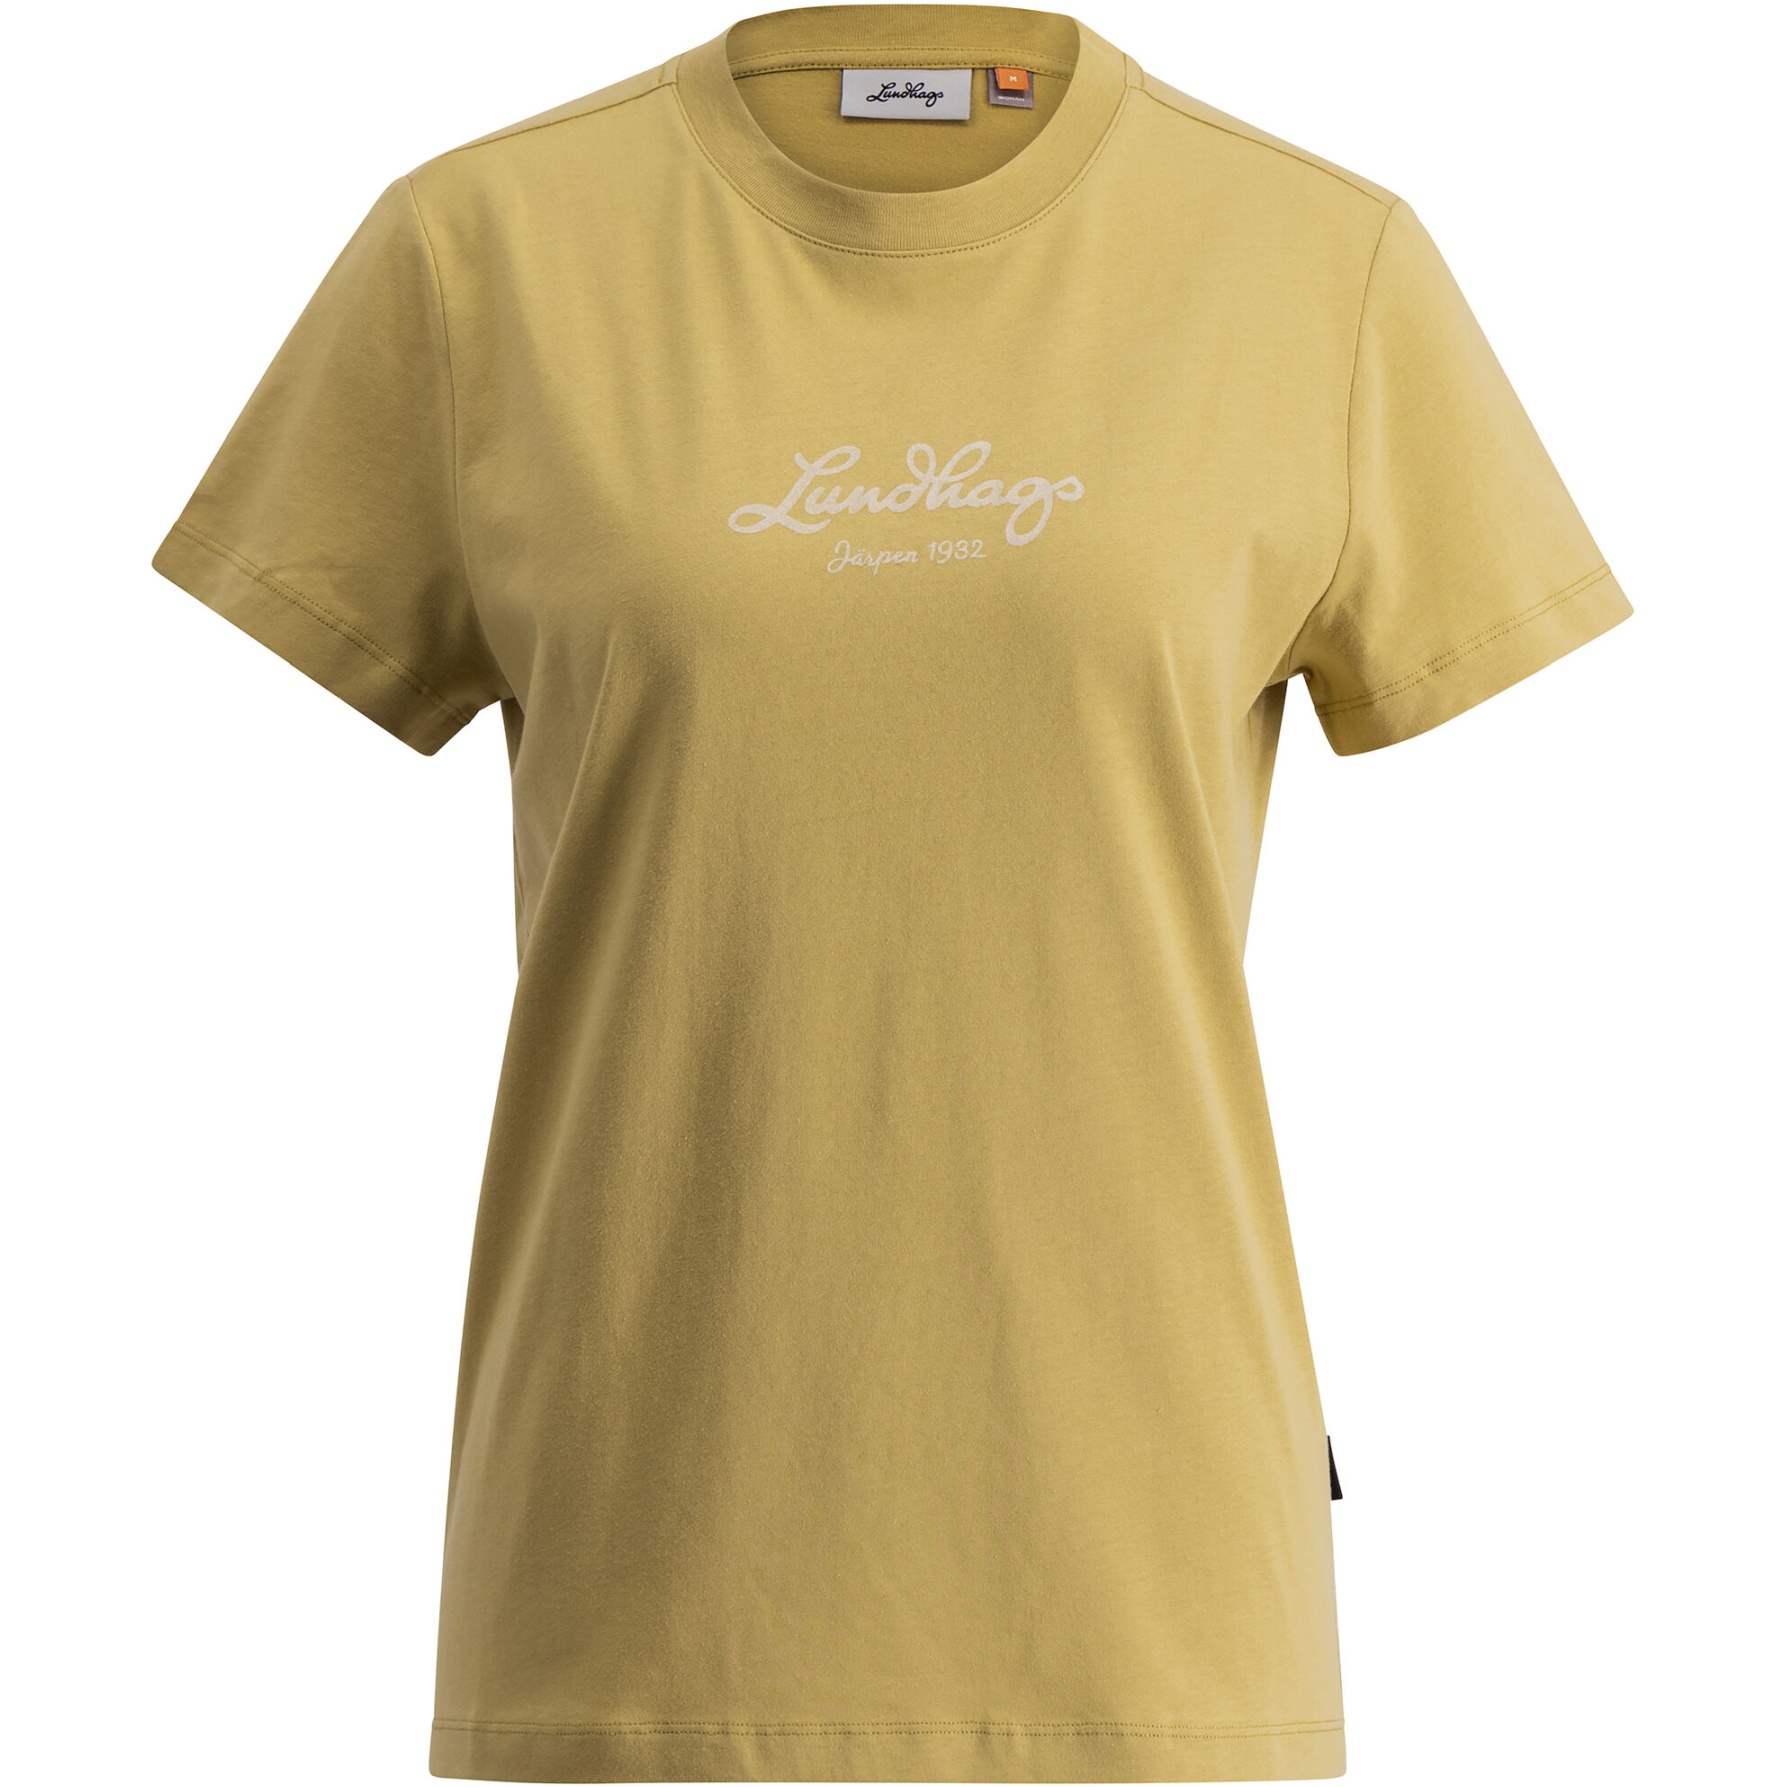 Produktbild von Lundhags Järpen Logo T-Shirt Damen - Straw 50700